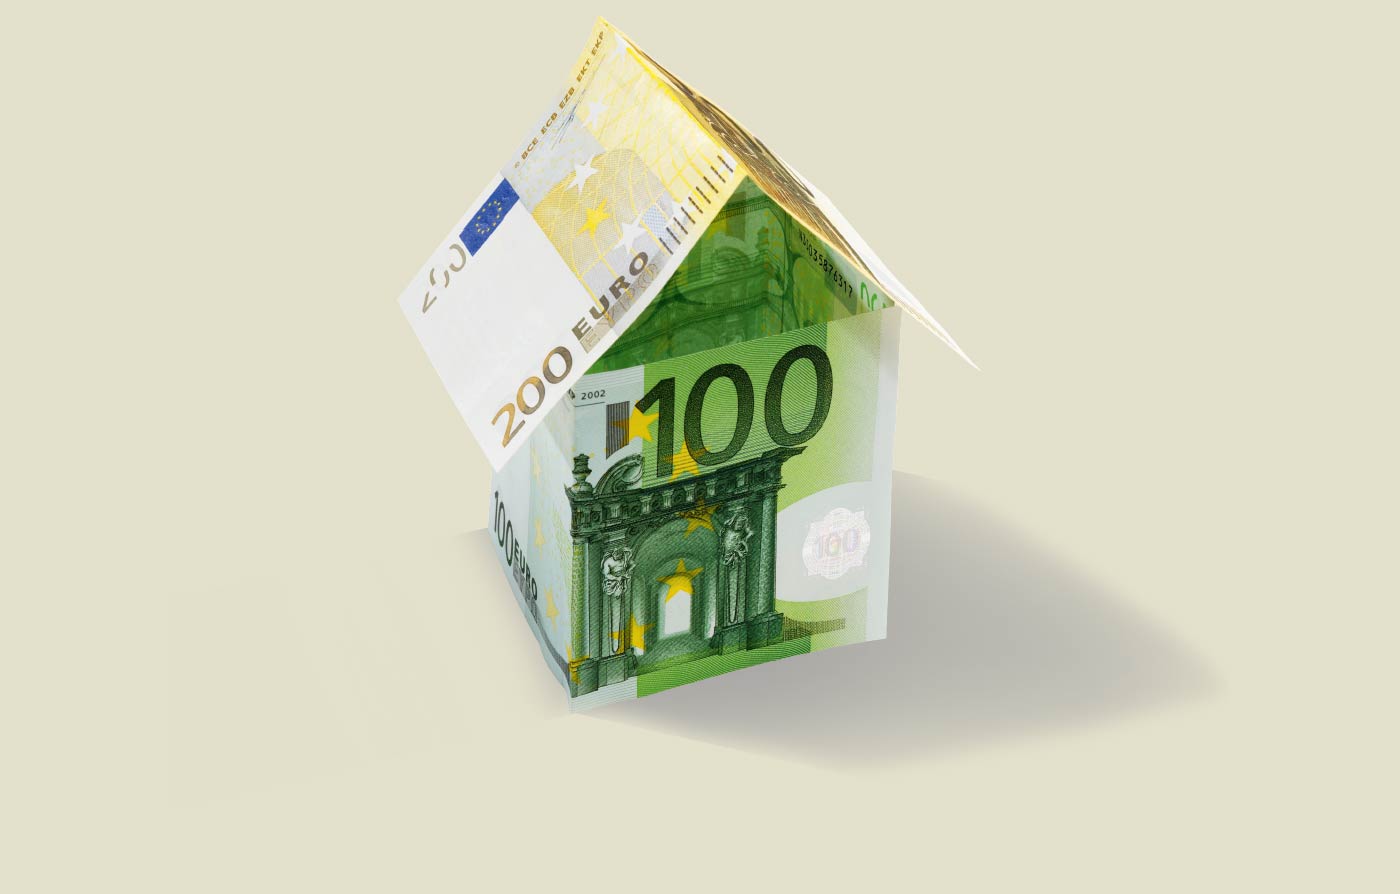 100-Euro-Scheine, die zu einem Haus mit Dach gefaltet sind.